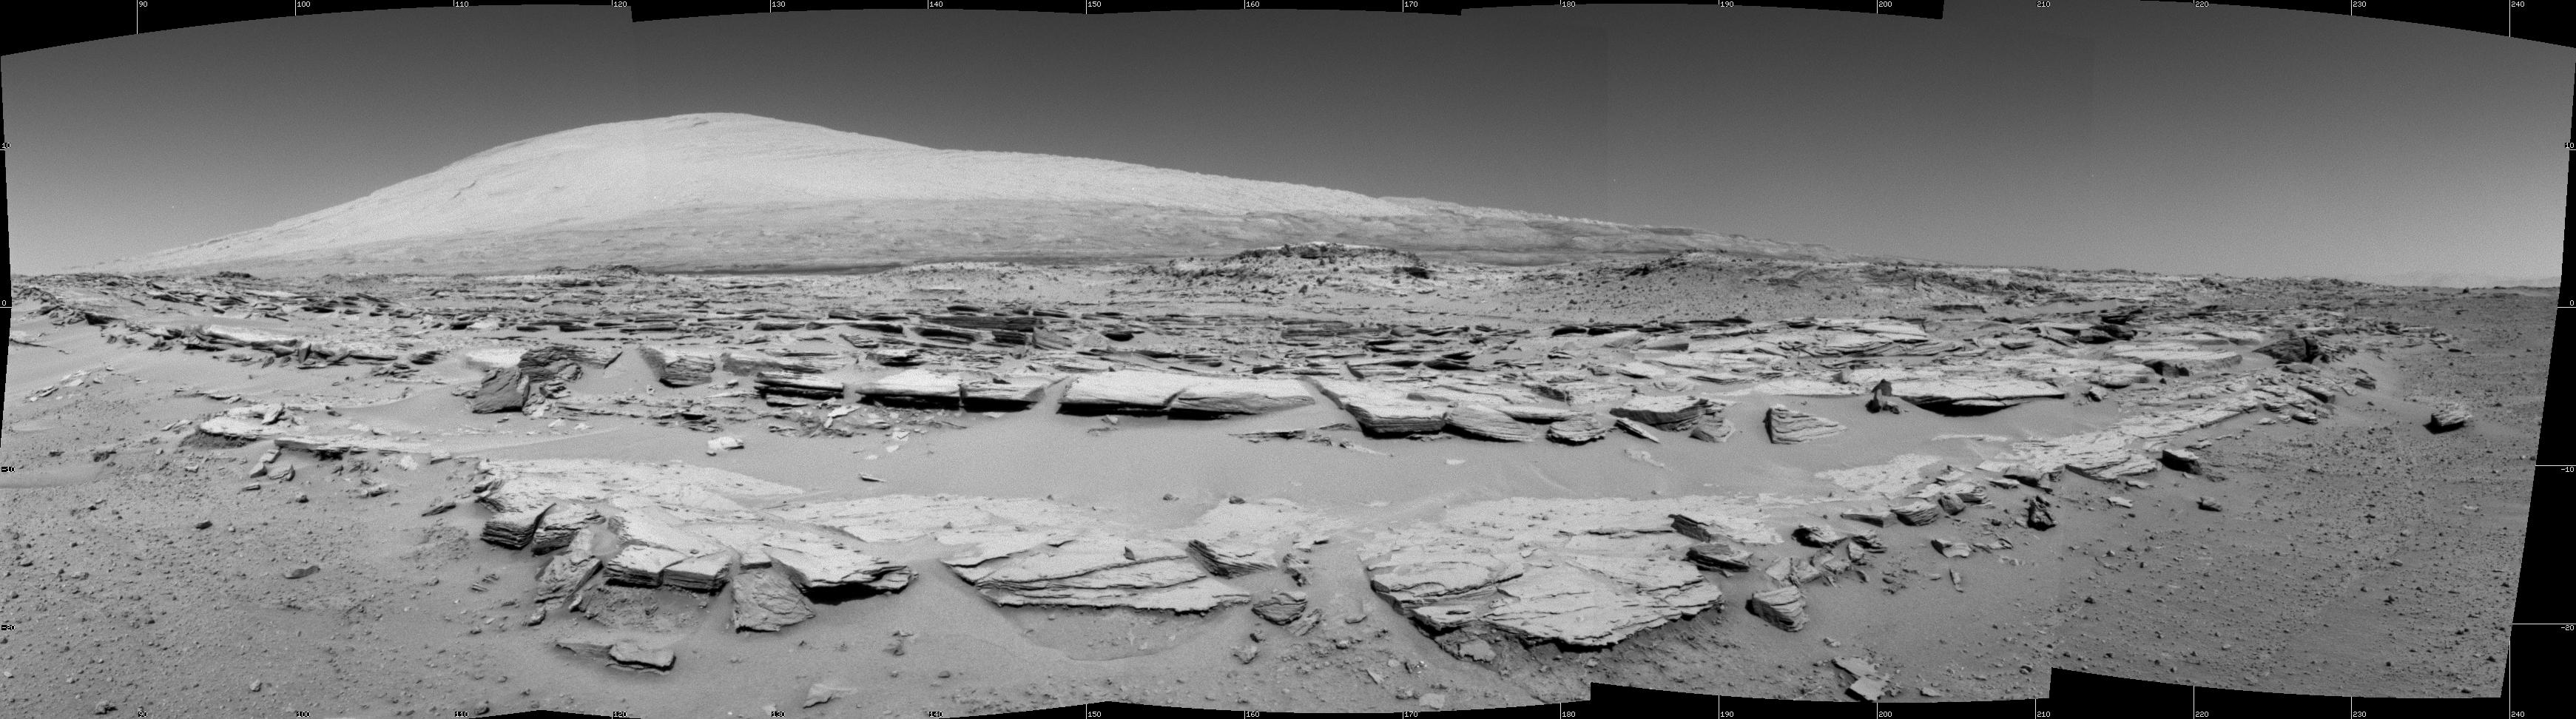 Magnifique panorama à 160° réalisé par la caméra de navigation (Navcam) de Curiosity, au 548e jour de sa mission. L’image (projection cylindrique) est centrée sur la direction sud-sud-est. Au premier plan, on distingue les feuillets de roches du site Junda où le rover s’est arrêté durant quelques heures, le 19 février. Haut de 5.500 mètres, le mont Sharp (également appelé Aeolis Mons, soit le mont Éole) domine majestueusement l’horizon. © Nasa, JPL-Caltech